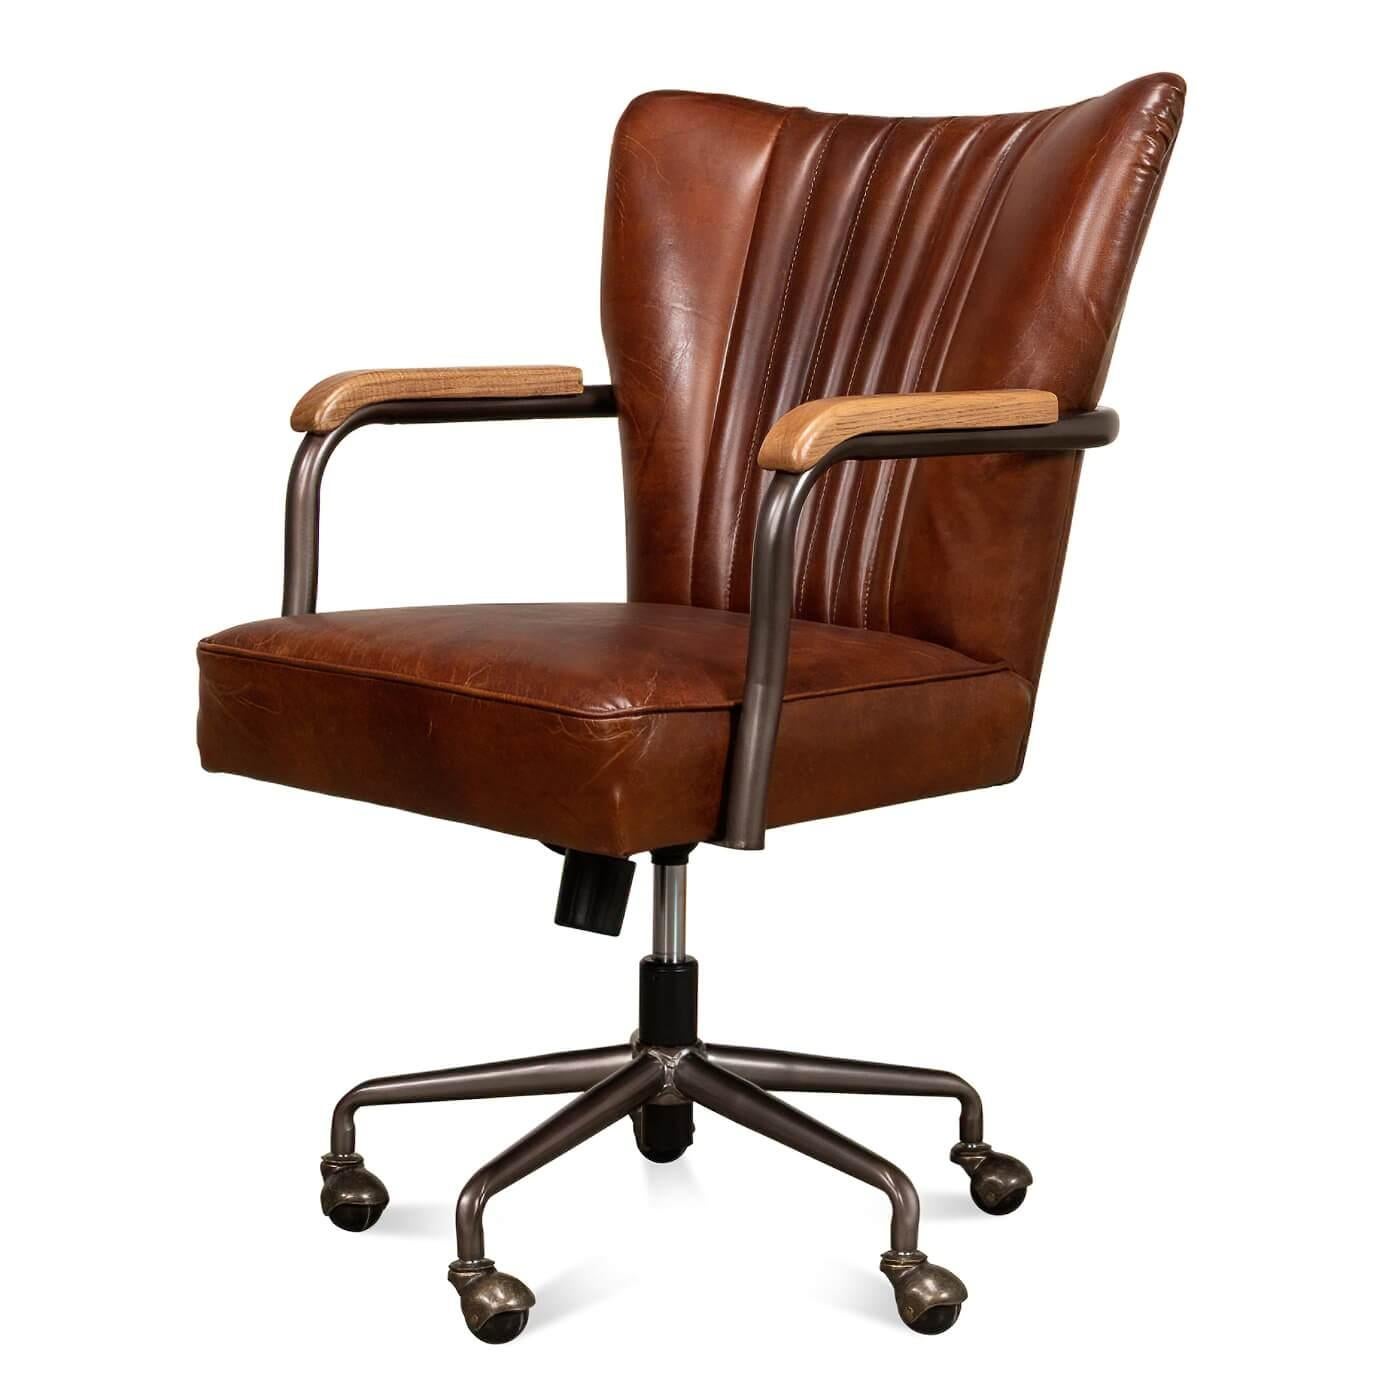 Chaise de bureau en cuir de style industriel avec base pivotante à 5 roulettes. Cette chaise est recouverte de notre cuir brun Havana et possède un dossier à volutes avec des accoudoirs en métal de style ouvert garnis de bois. 

Dimensions
25